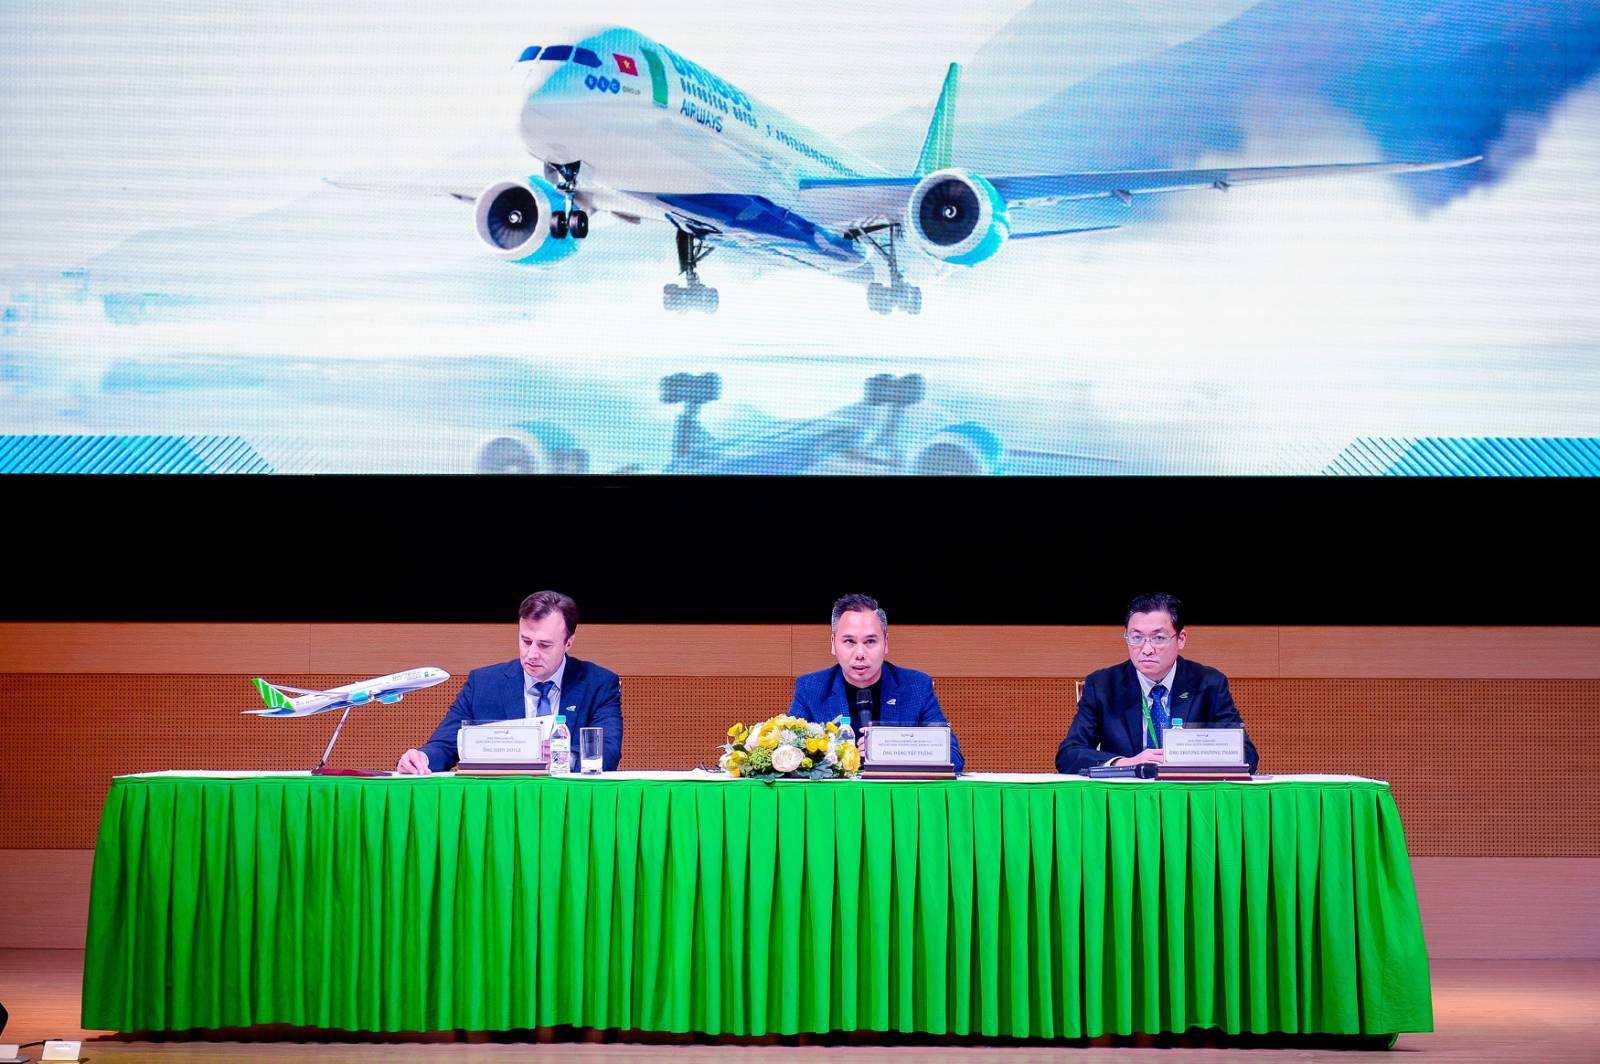 Lãnh đạo Bamboo Airways cho biết sẽ tiếp nhận máy bay thân rộng Boeing 787-9 Dreamliner đầu tiên và tổ chức hội thảo “Tiềm năng và cơ hội đầu tư Bamboo Airways” tại FLC Hạ Long trong tháng 12/2019.